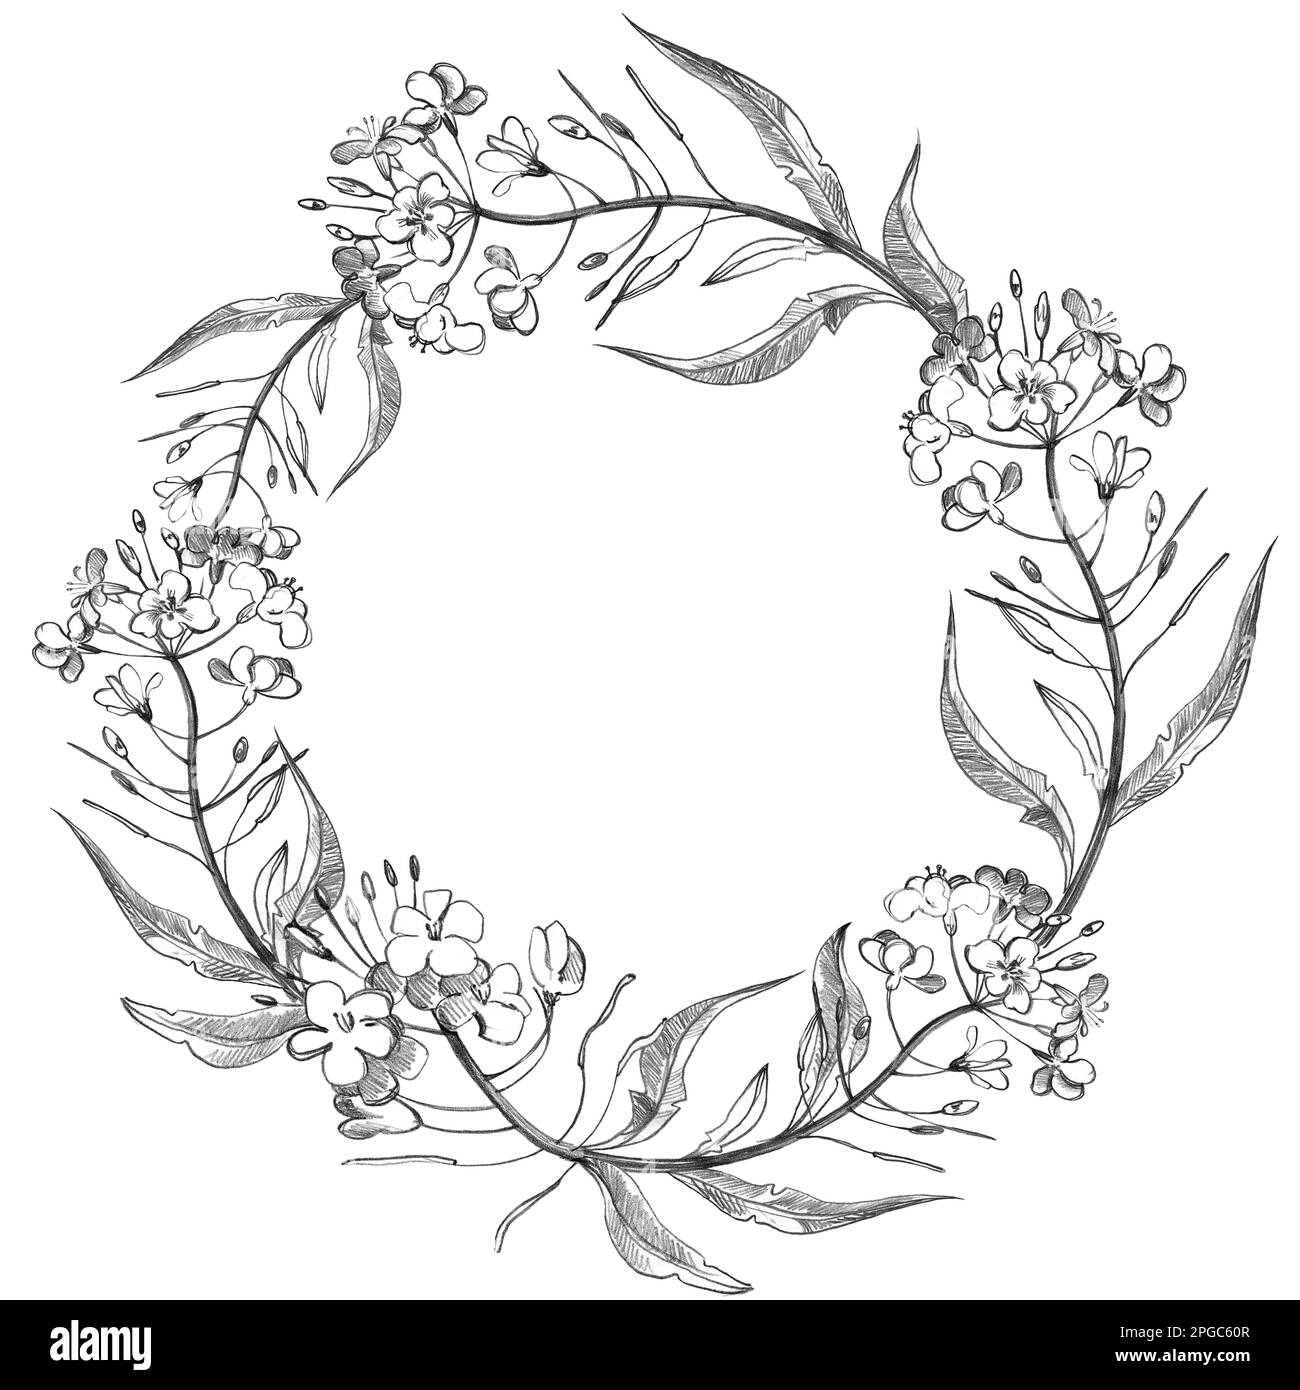 Mano dibujar patrón redondo floral en estilo vintage. Flores, hojas y hierbas. Ilustraciones botánicas. Foto de stock